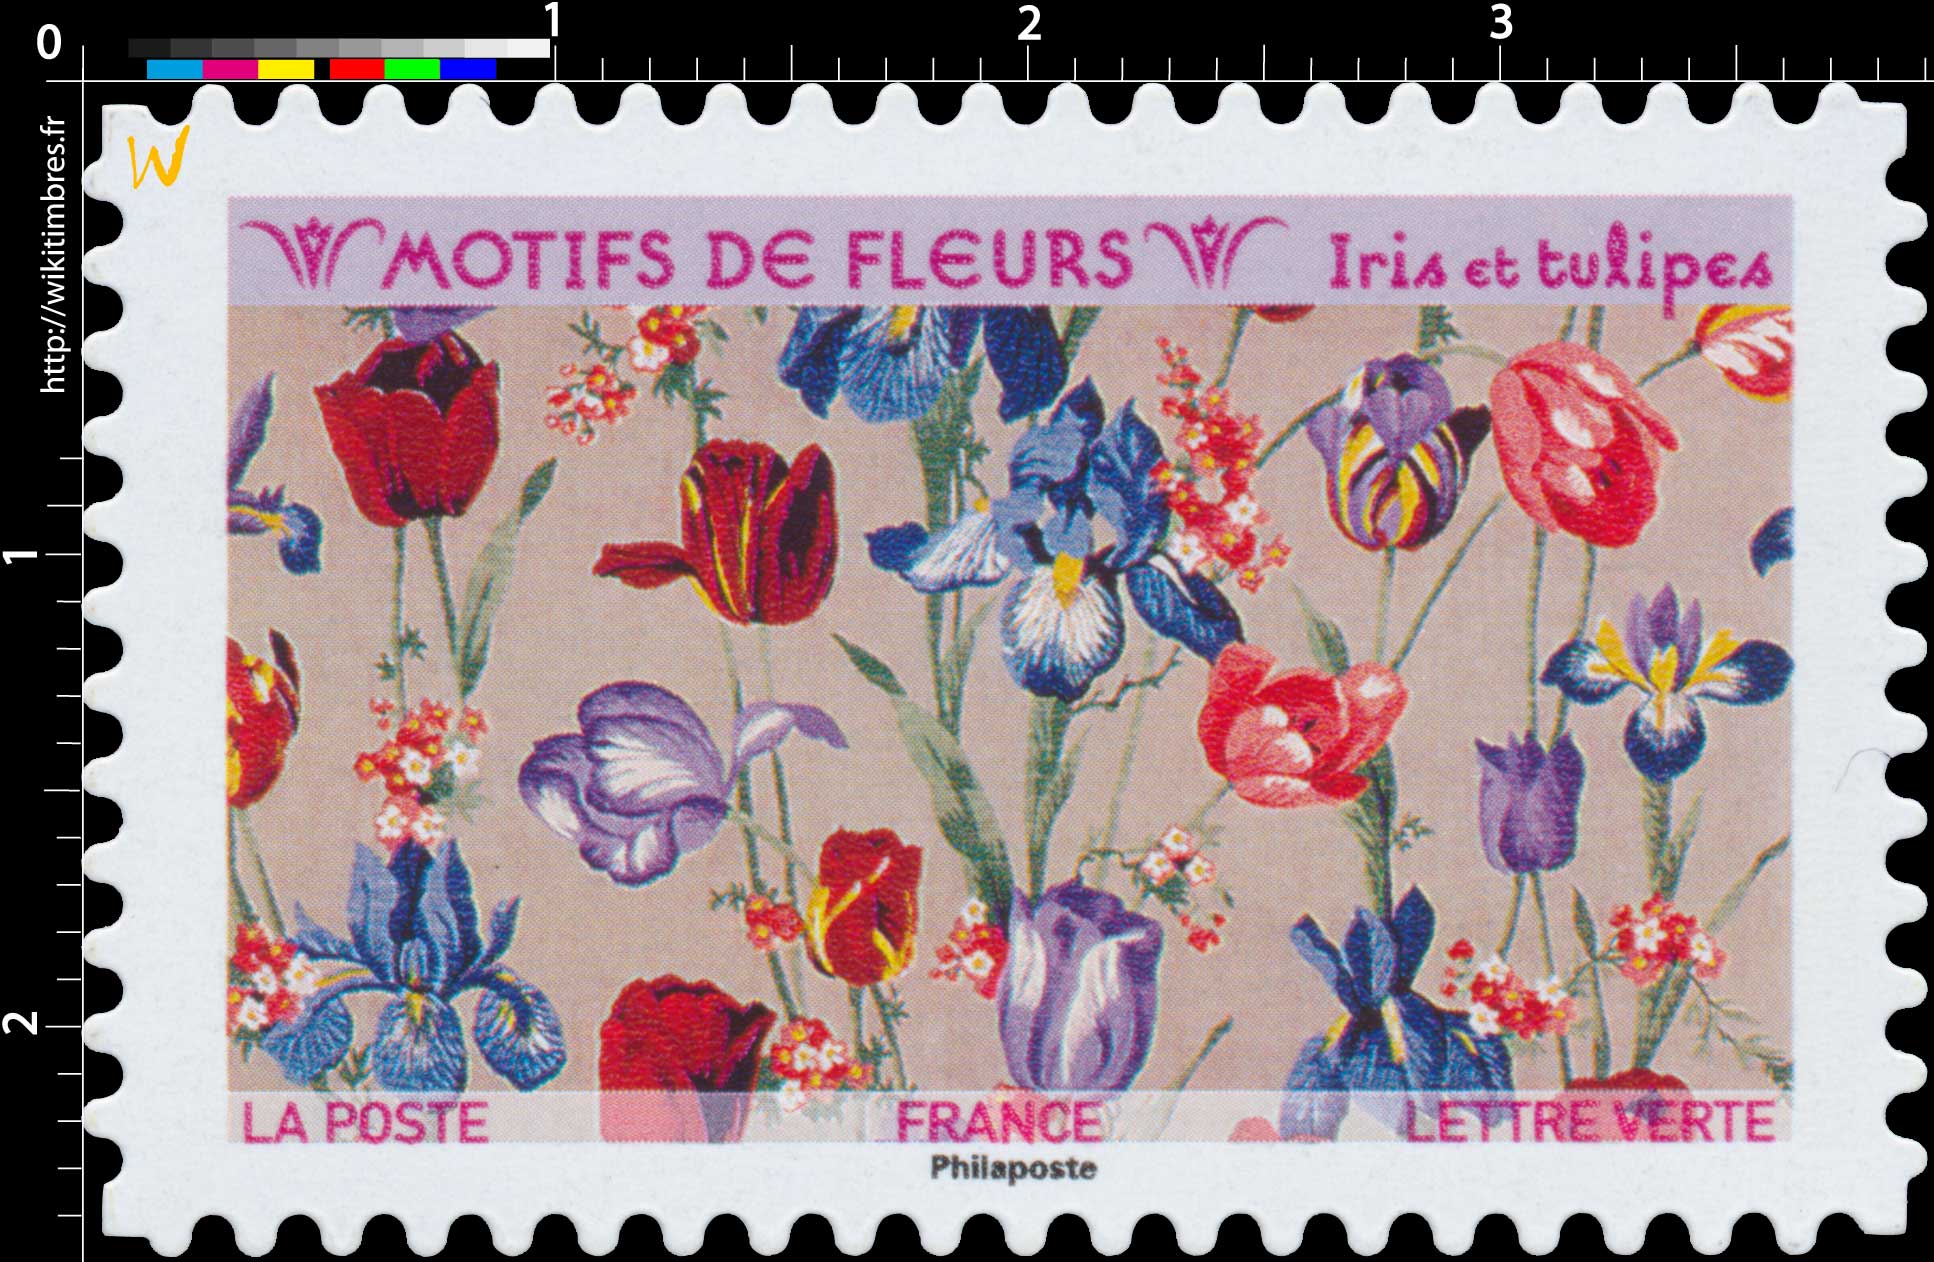 2021 Motifs de fleurs - Iris et tulipes